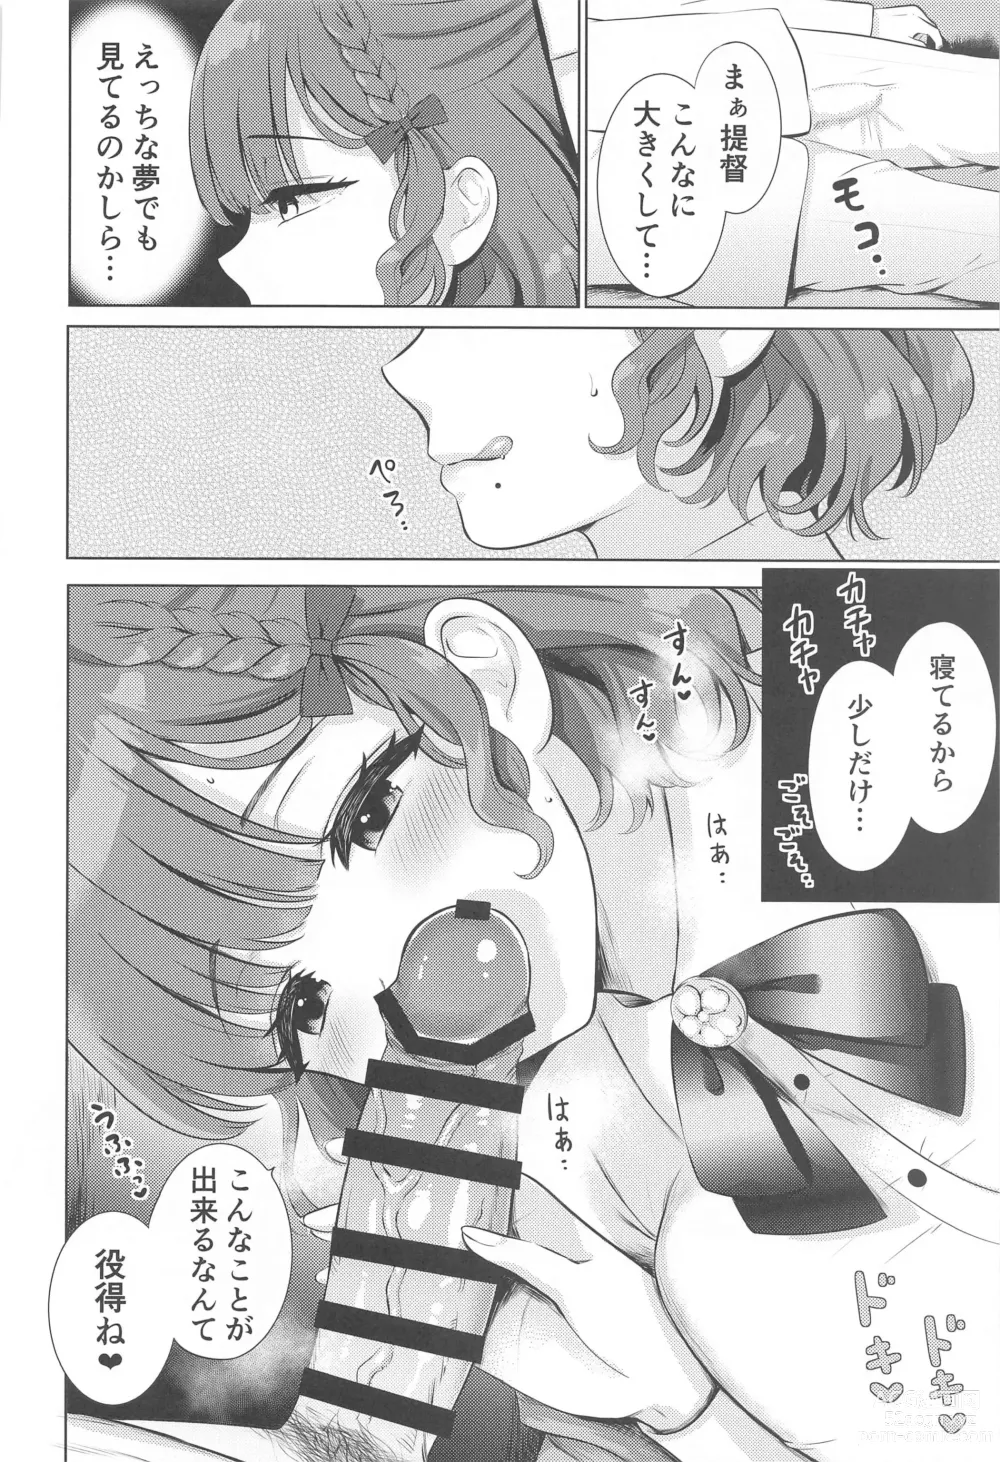 Page 3 of doujinshi Yoru no Asahi